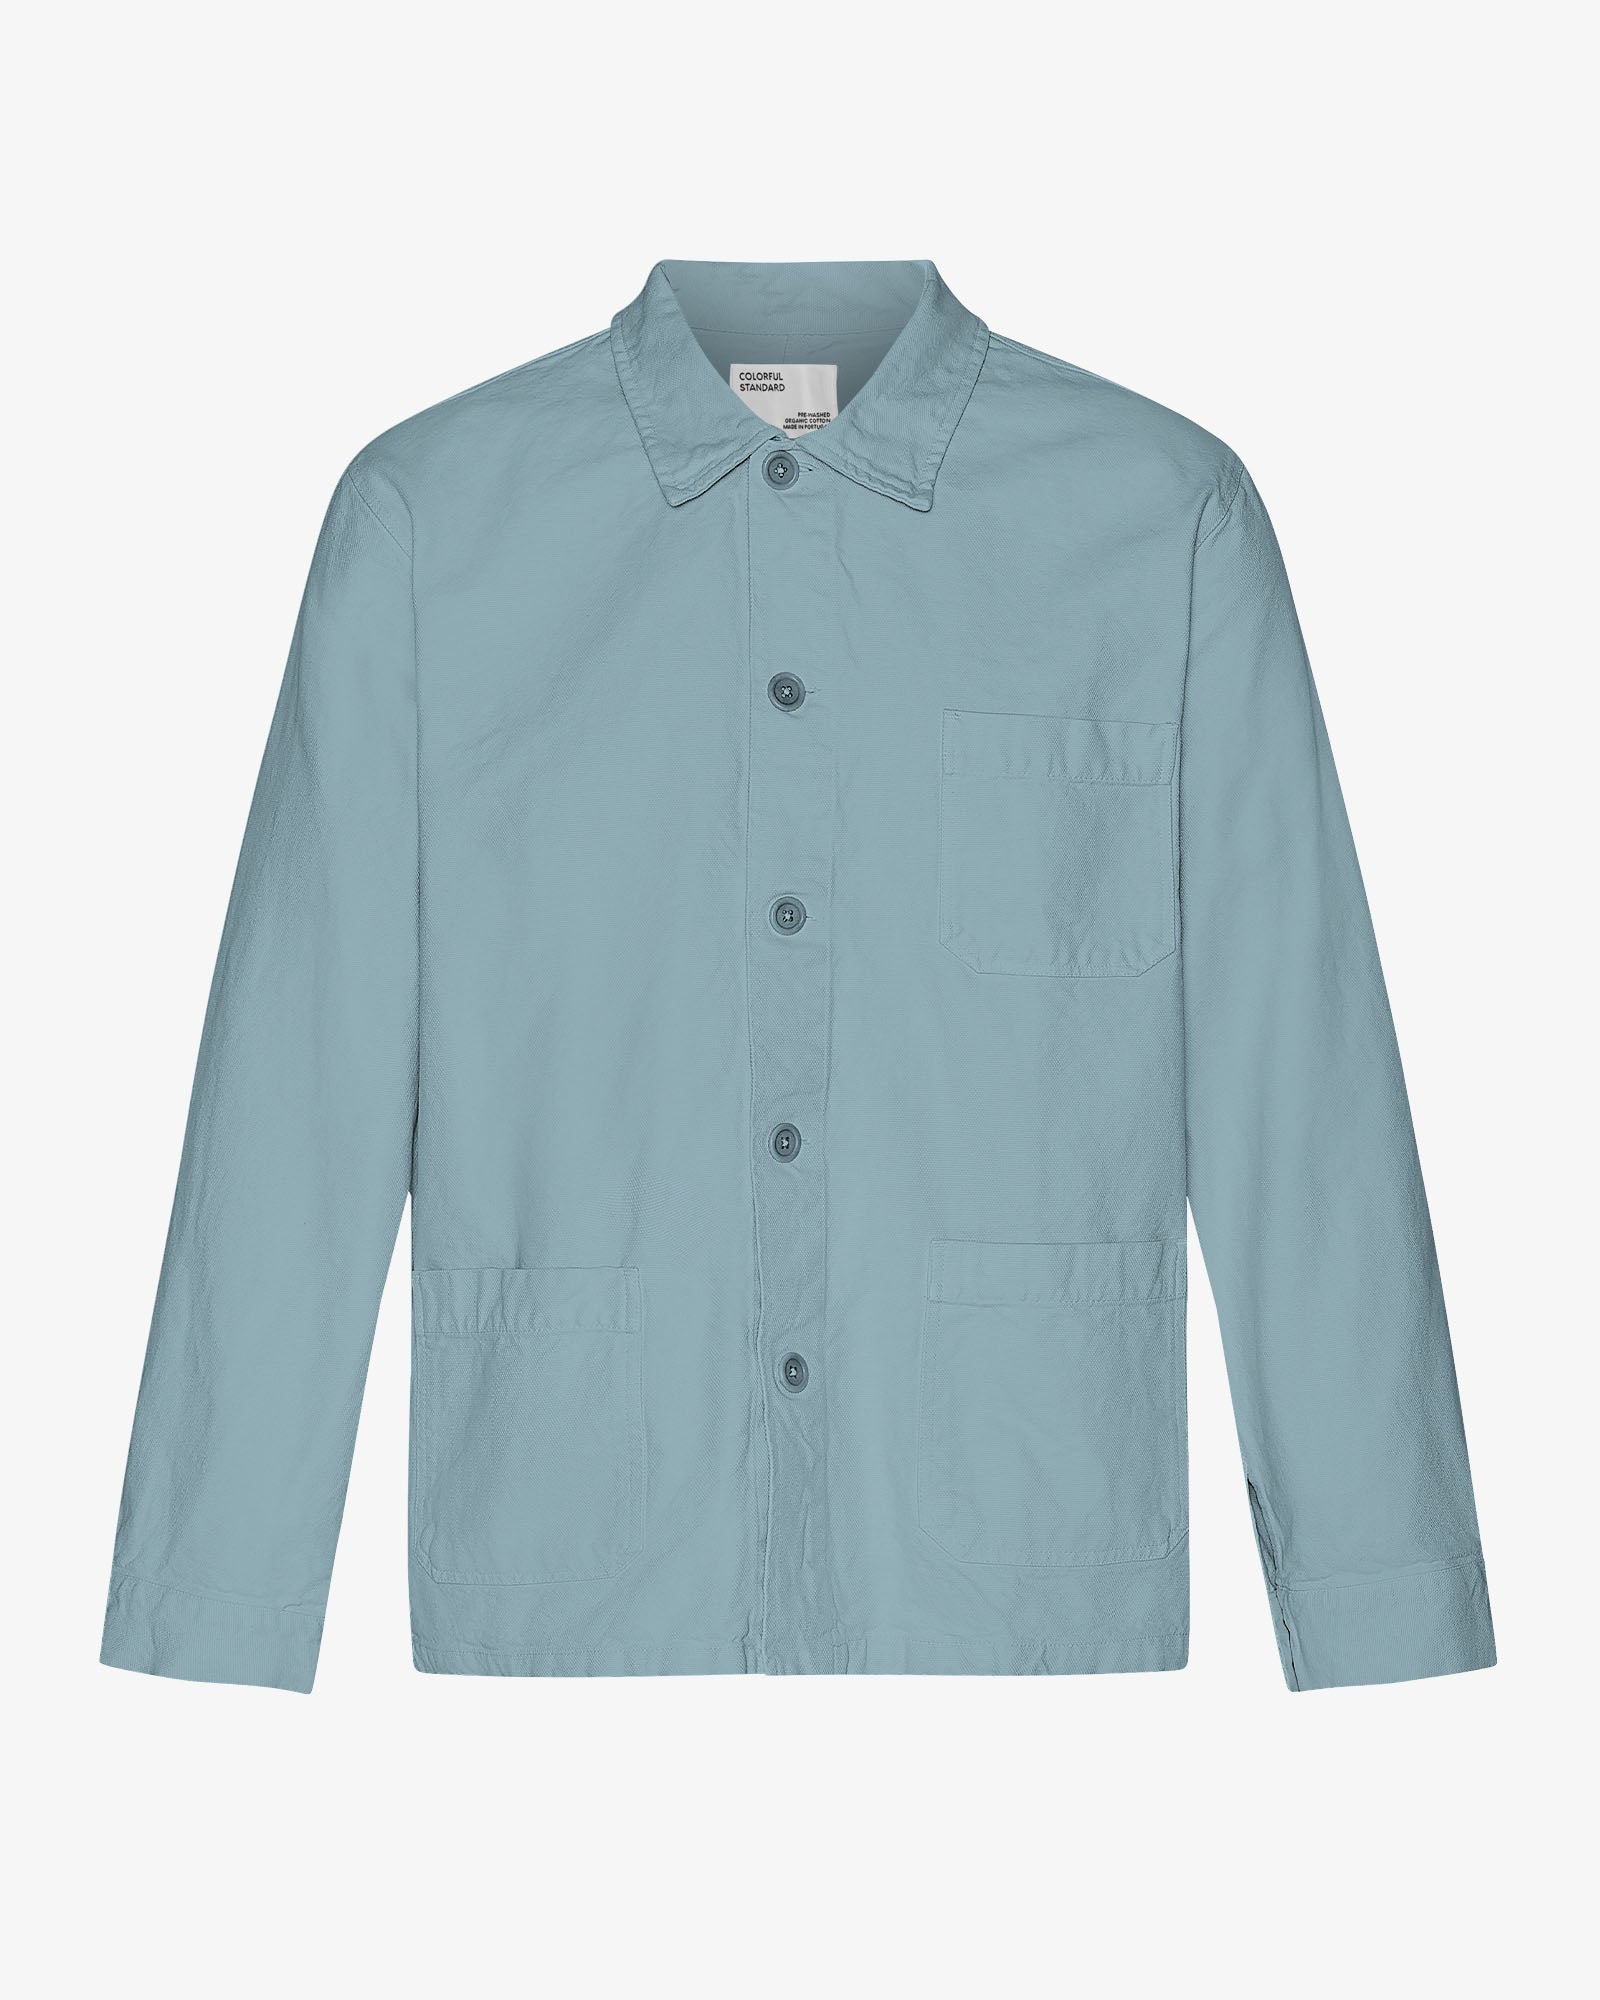 Organic Workwear Jacket - Stone Blue